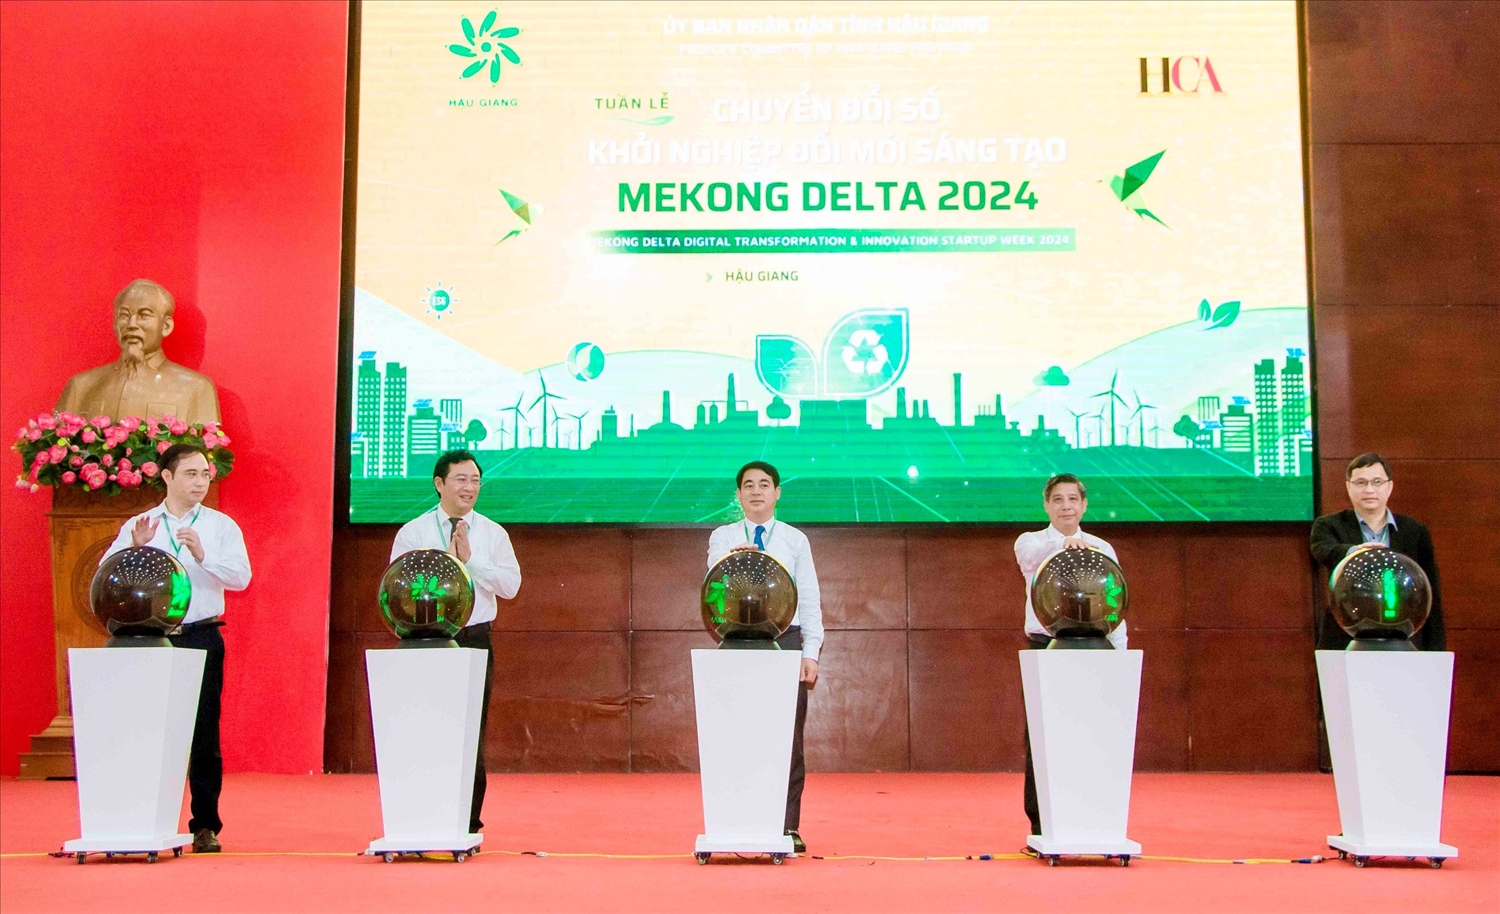 Ông Nghiêm Xuân Thành, Bí thư Tỉnh uỷ Hậu Giang ( đứng giữa) cùng Ban tổ chức thực hiện nghi thức khai mạc Tuần lễ Chuyển đổi số và Khởi nghiệp đổi mới sáng tạo - Mekong Delta 2024